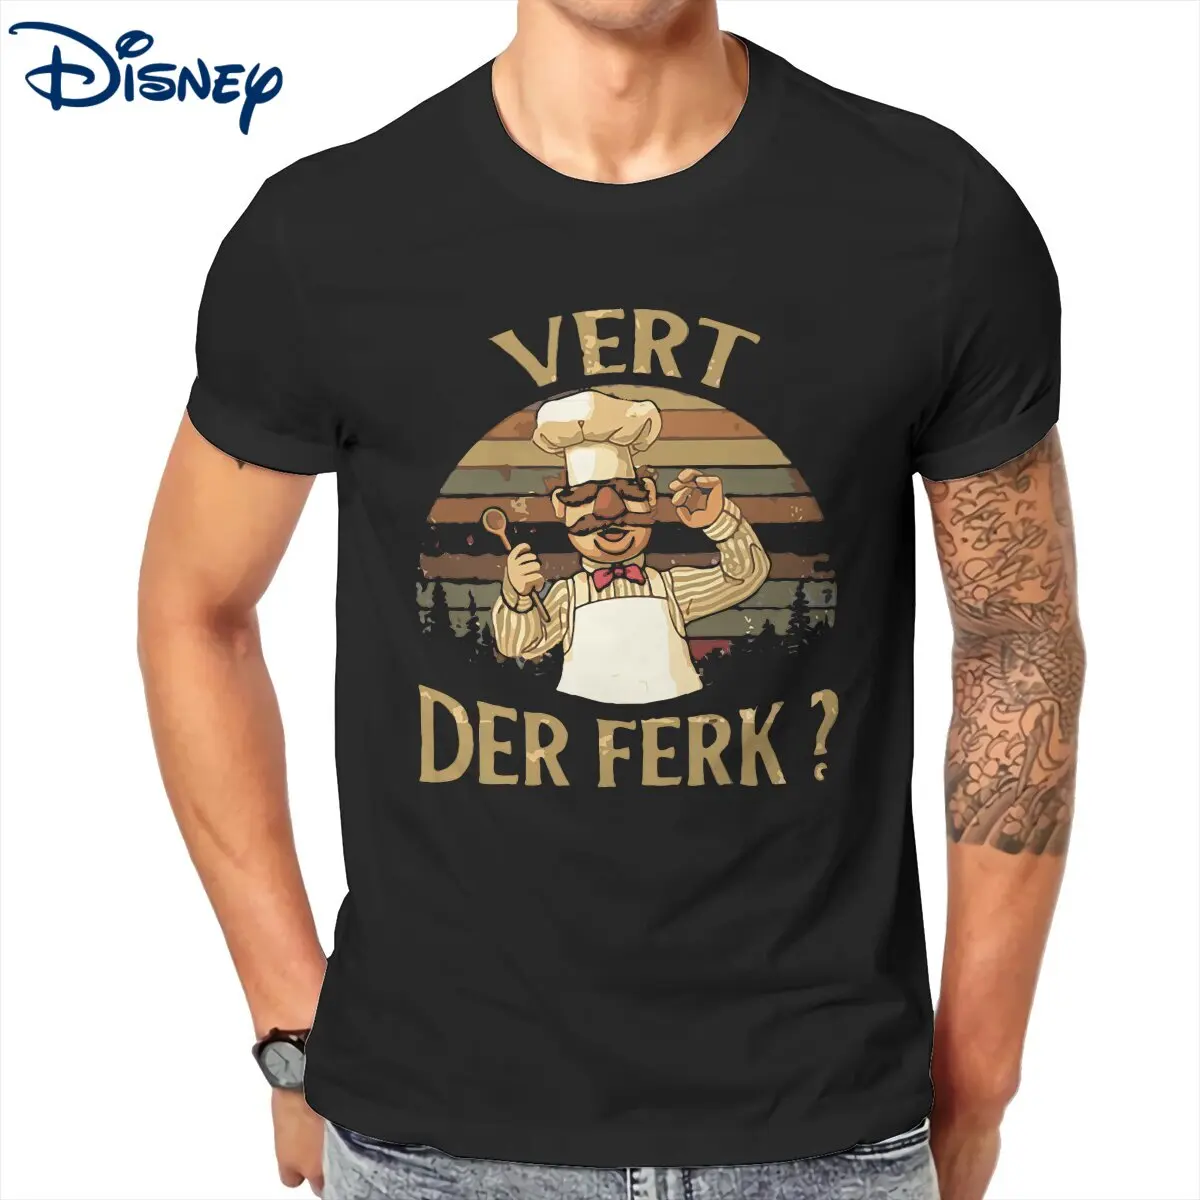 

Men T-Shirt Disney Vert Der Ferk the Muppets Funny Pure Cotton Tee Shirt Short Sleeve T Shirts Crew Neck Clothes Gift Idea